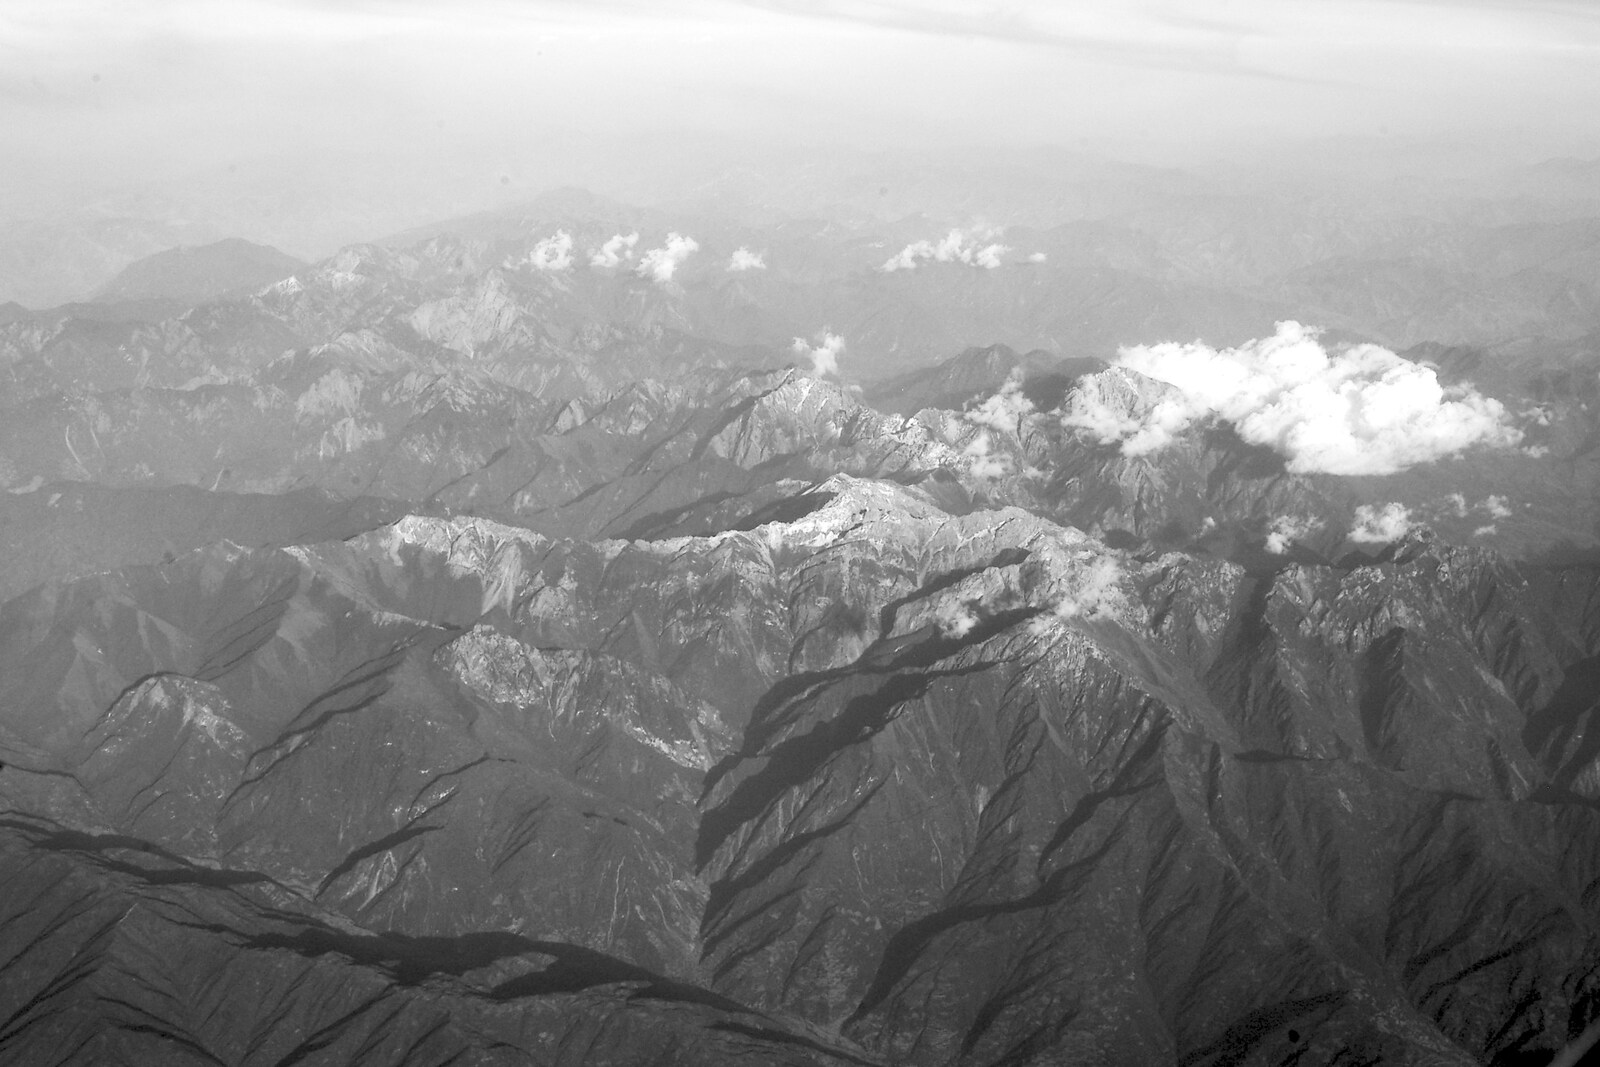 A mountain range in Mongolia from A Few Days in Nanjing, Jiangsu Province, China - 7th October 2006